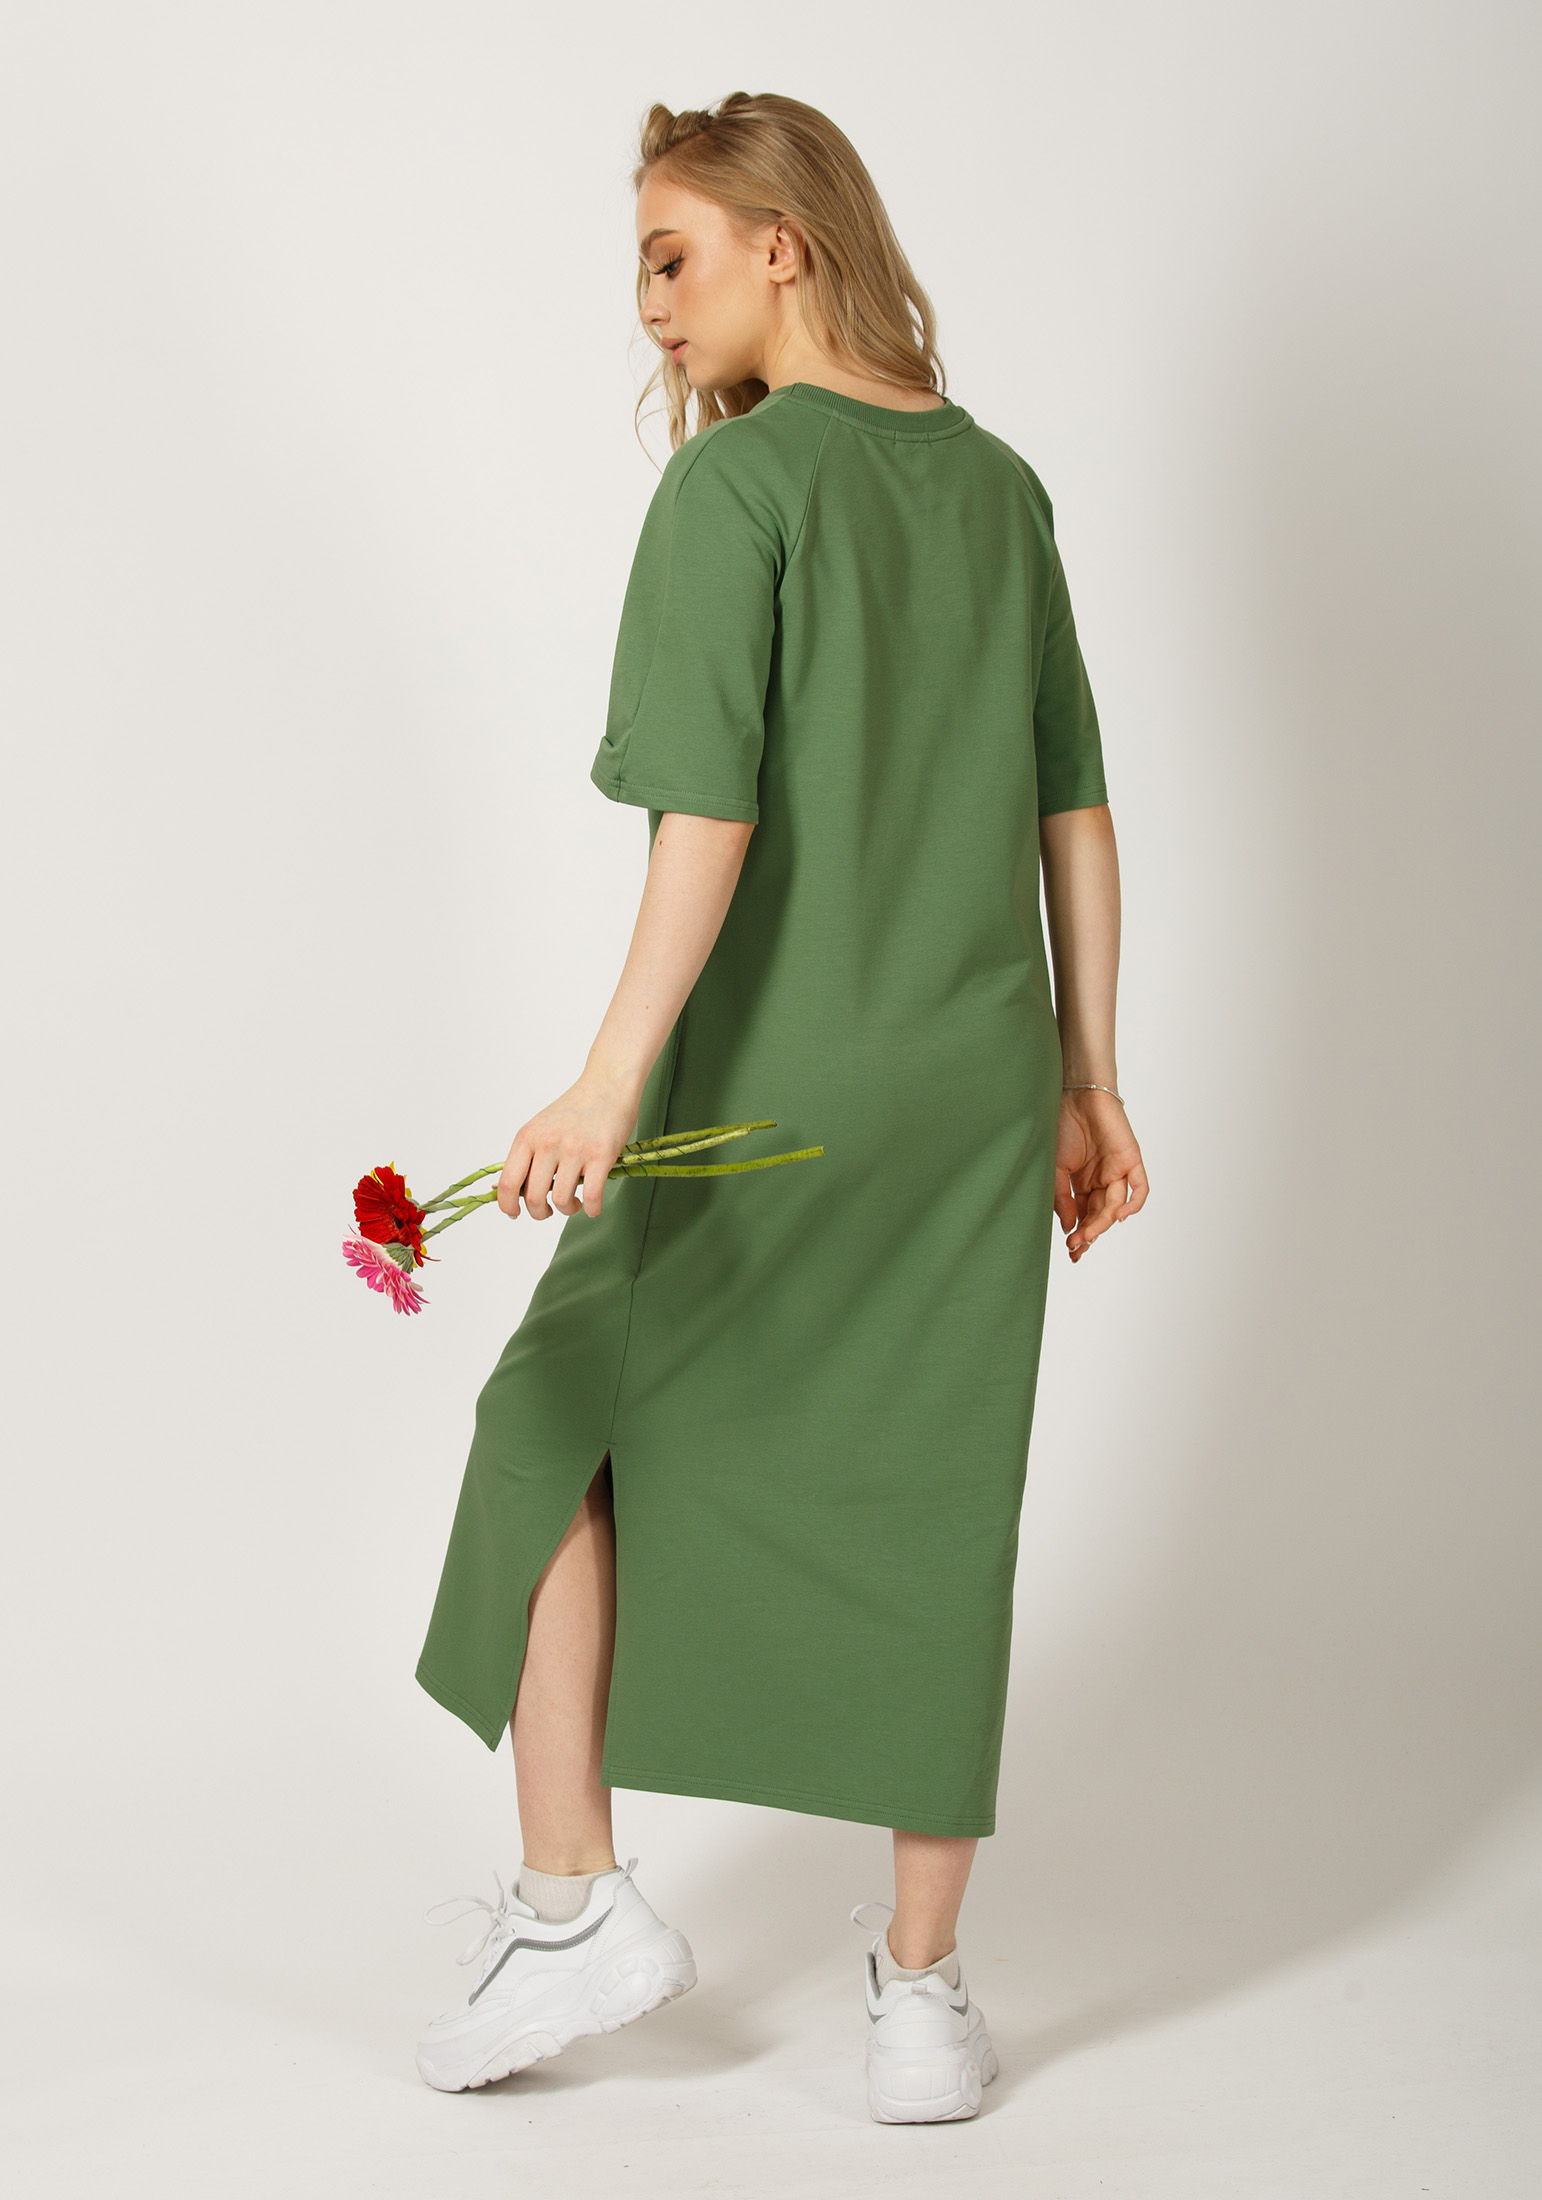 Платье женское 4140 оливковый Каталог товаров 